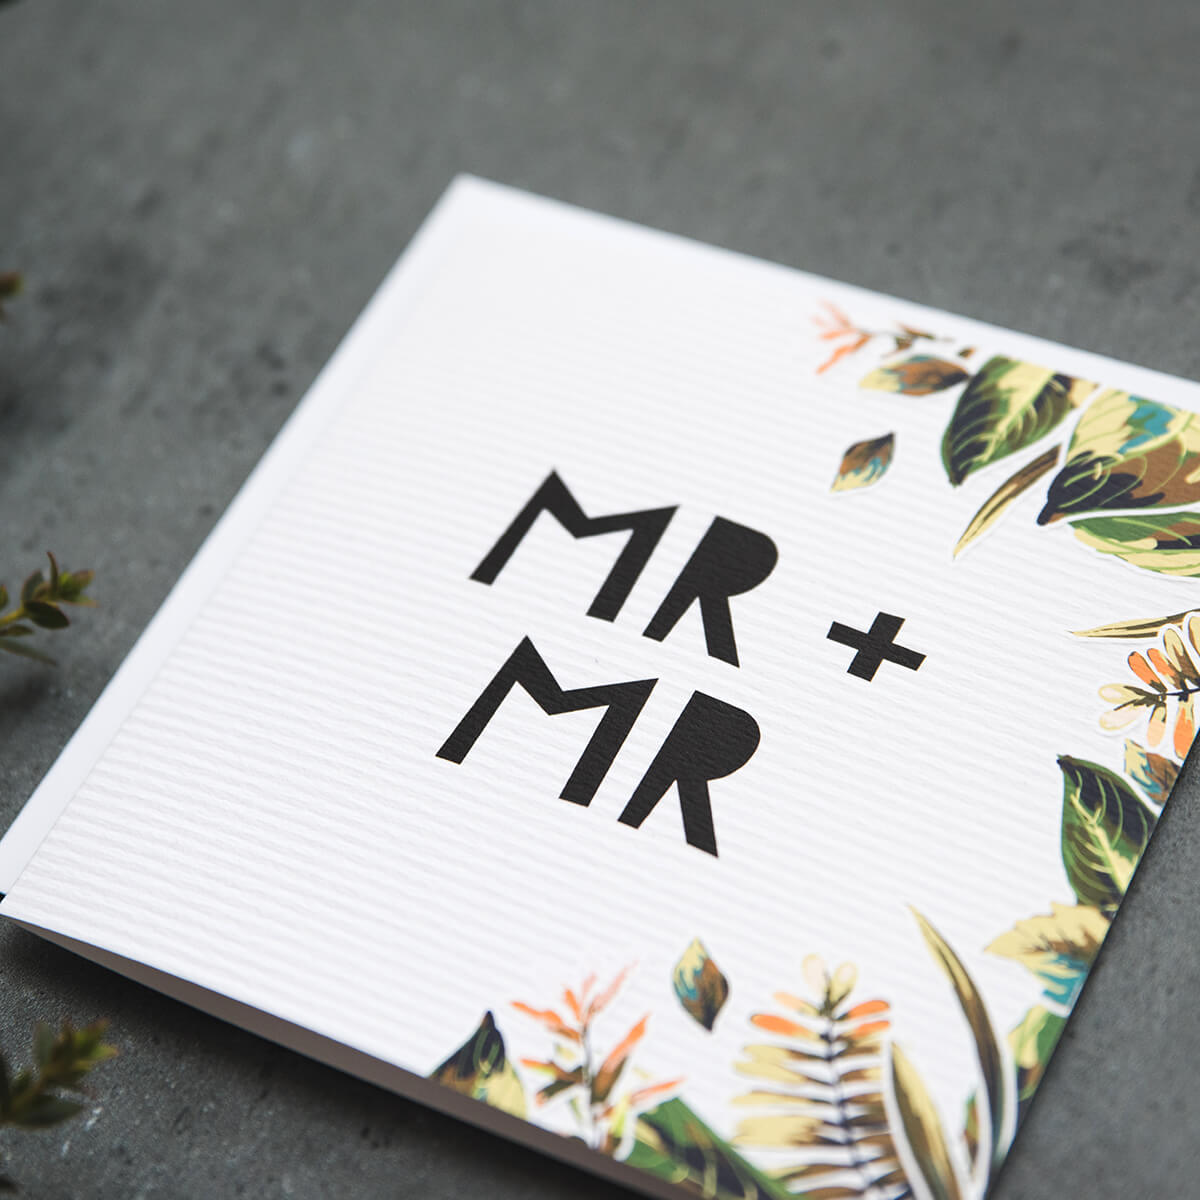 'Mr + Mr' Gay Wedding Card - I am Nat Ltd - Greeting Card